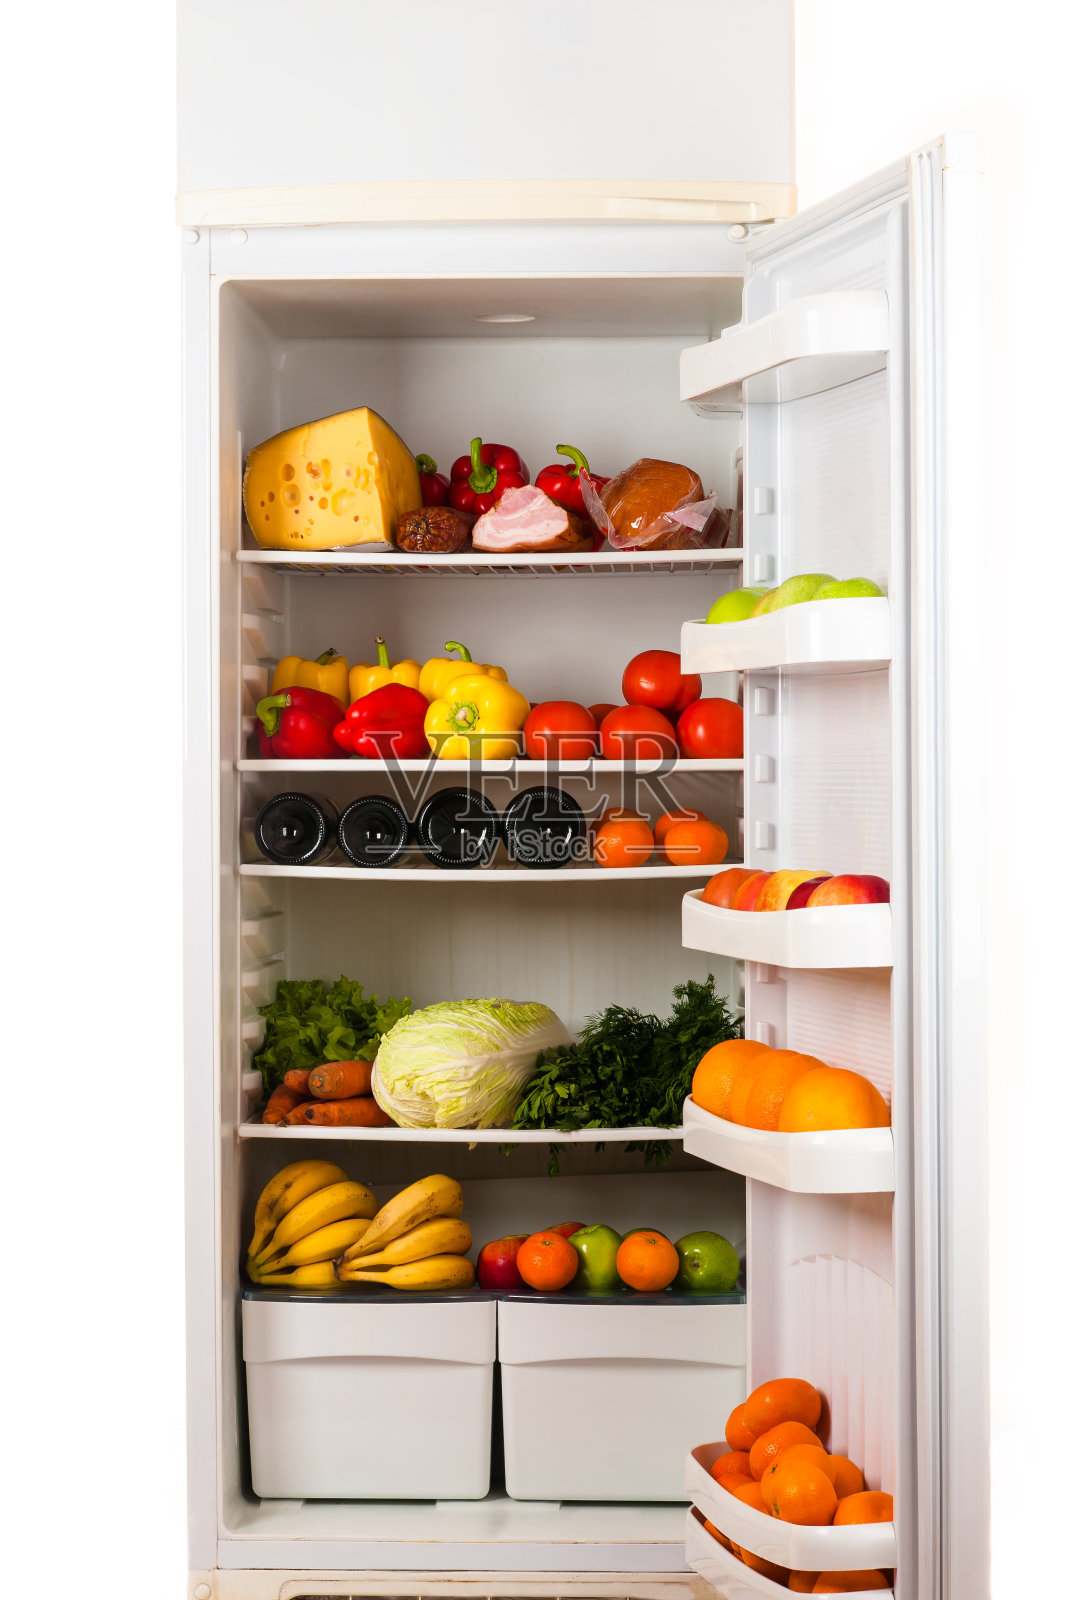 装满食物的冰箱照片摄影图片